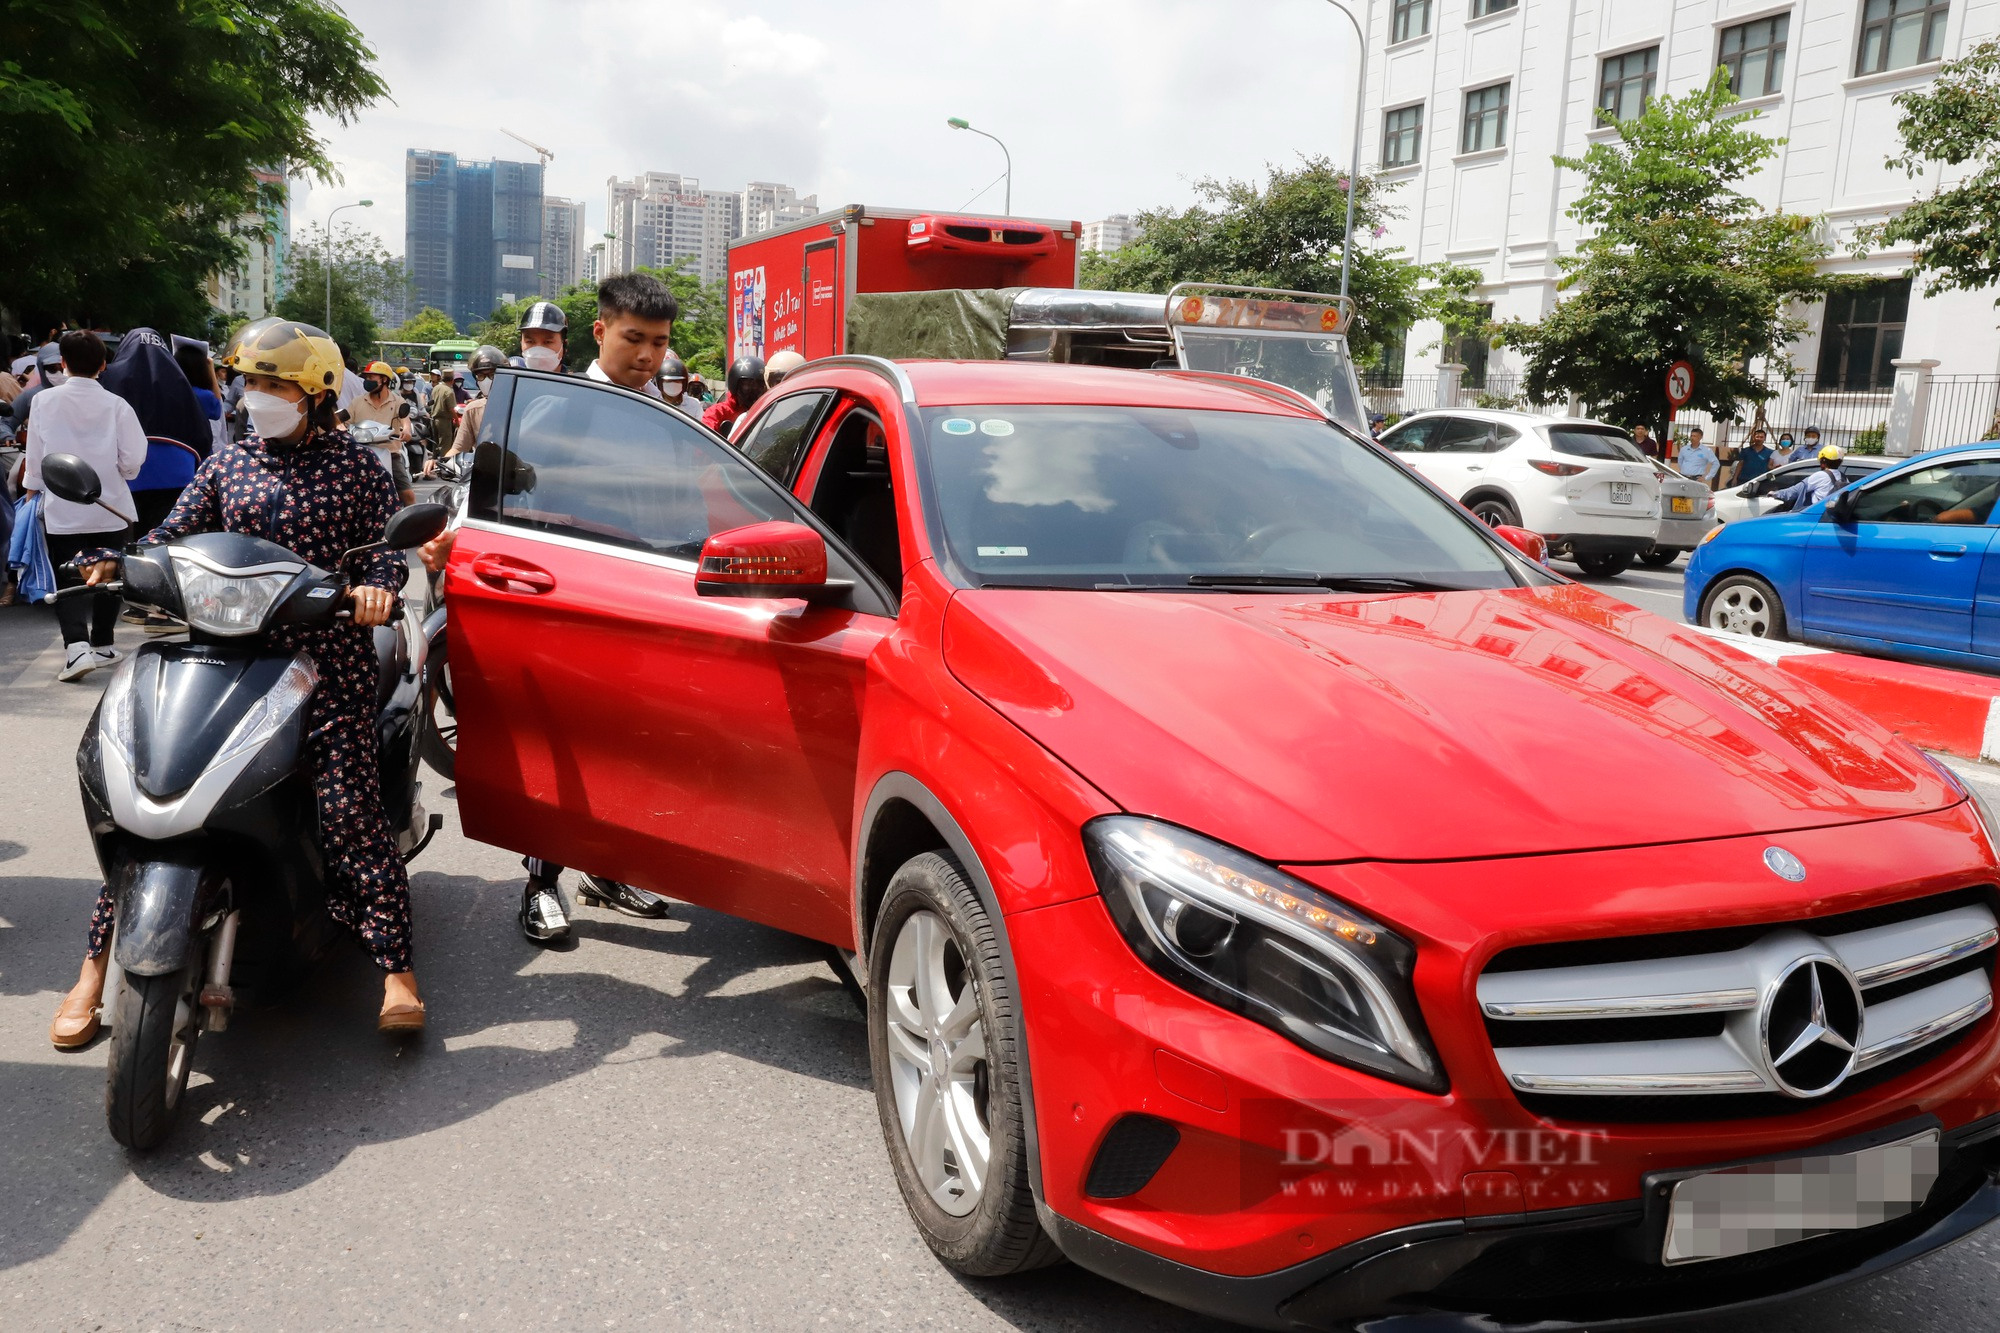 Ngắm dàn xe sang tiền tỷ Lexus, Mercedes-Maybach chở con đi thi tốt nghiệp THPT tại Hà Nội - Ảnh 10.